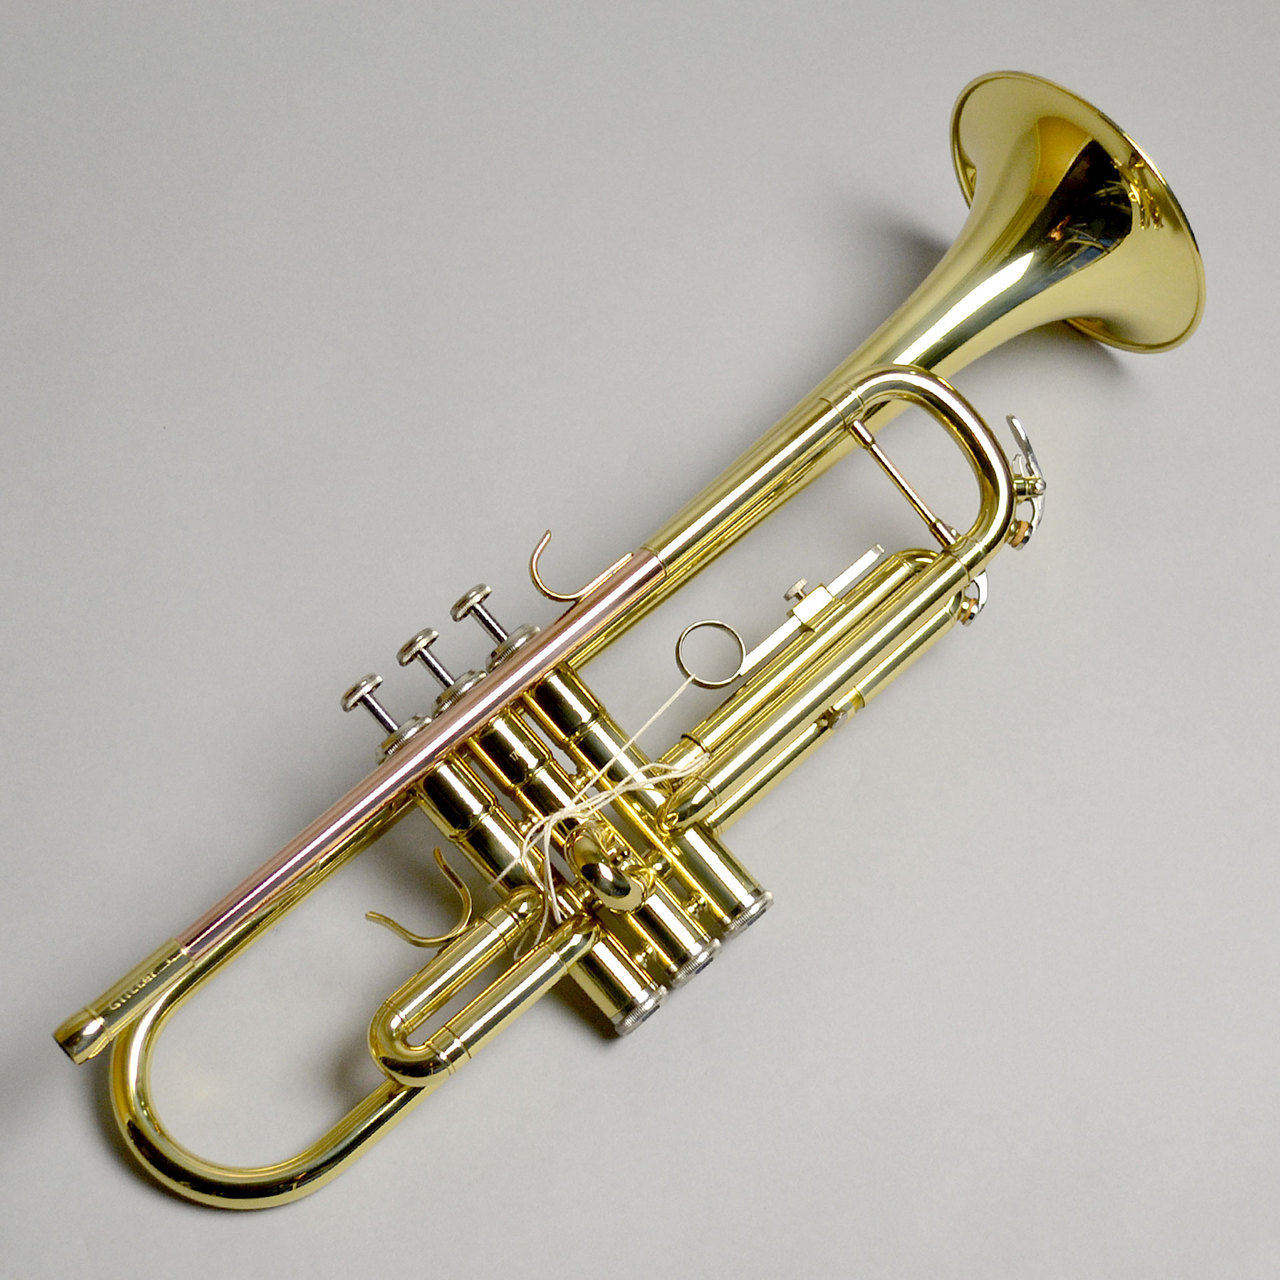 Briller トランペット trumpet - 通販 - solarenergysas.com.ar